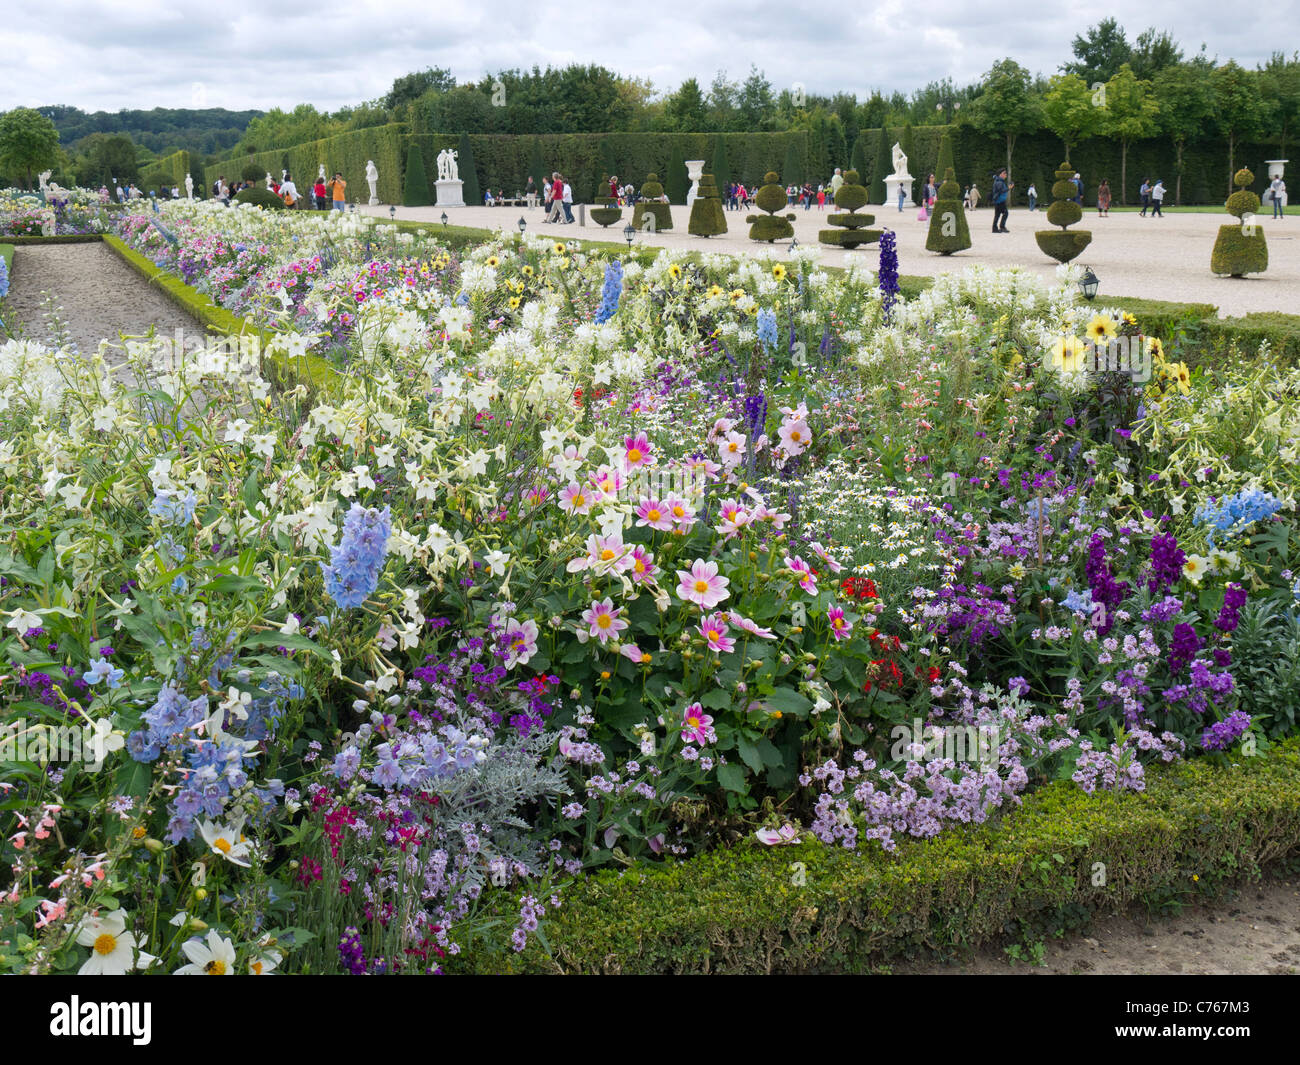 Il Castello di Versailles e Parigi Francia. Letti di fiori, il parterre, le fontane Foto Stock